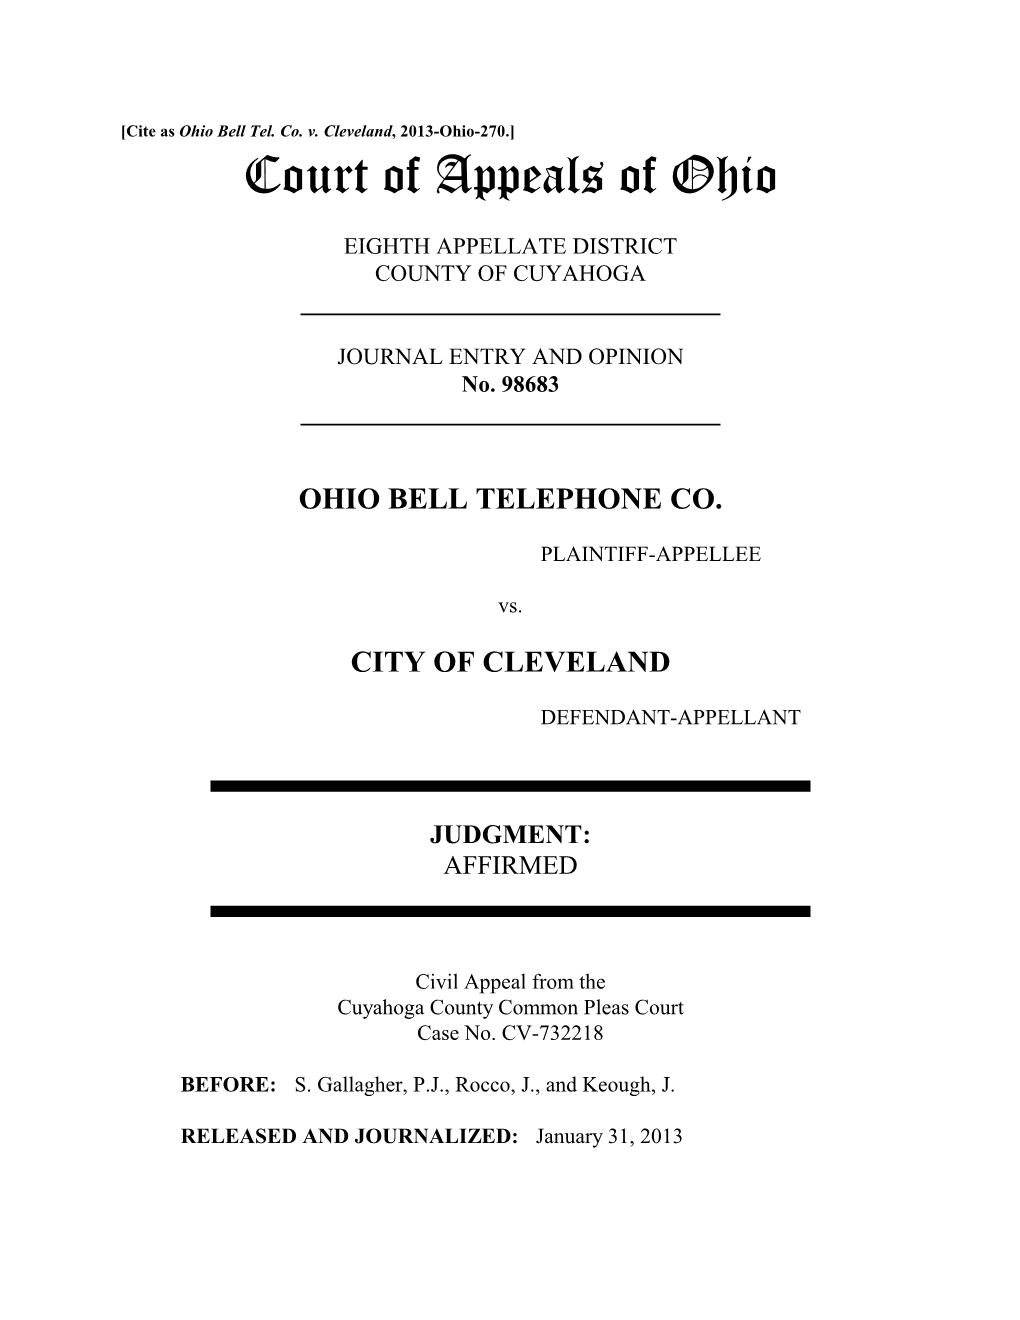 Ohio Bell Tel. Co. V. Cleveland, 2013-Ohio-270.]